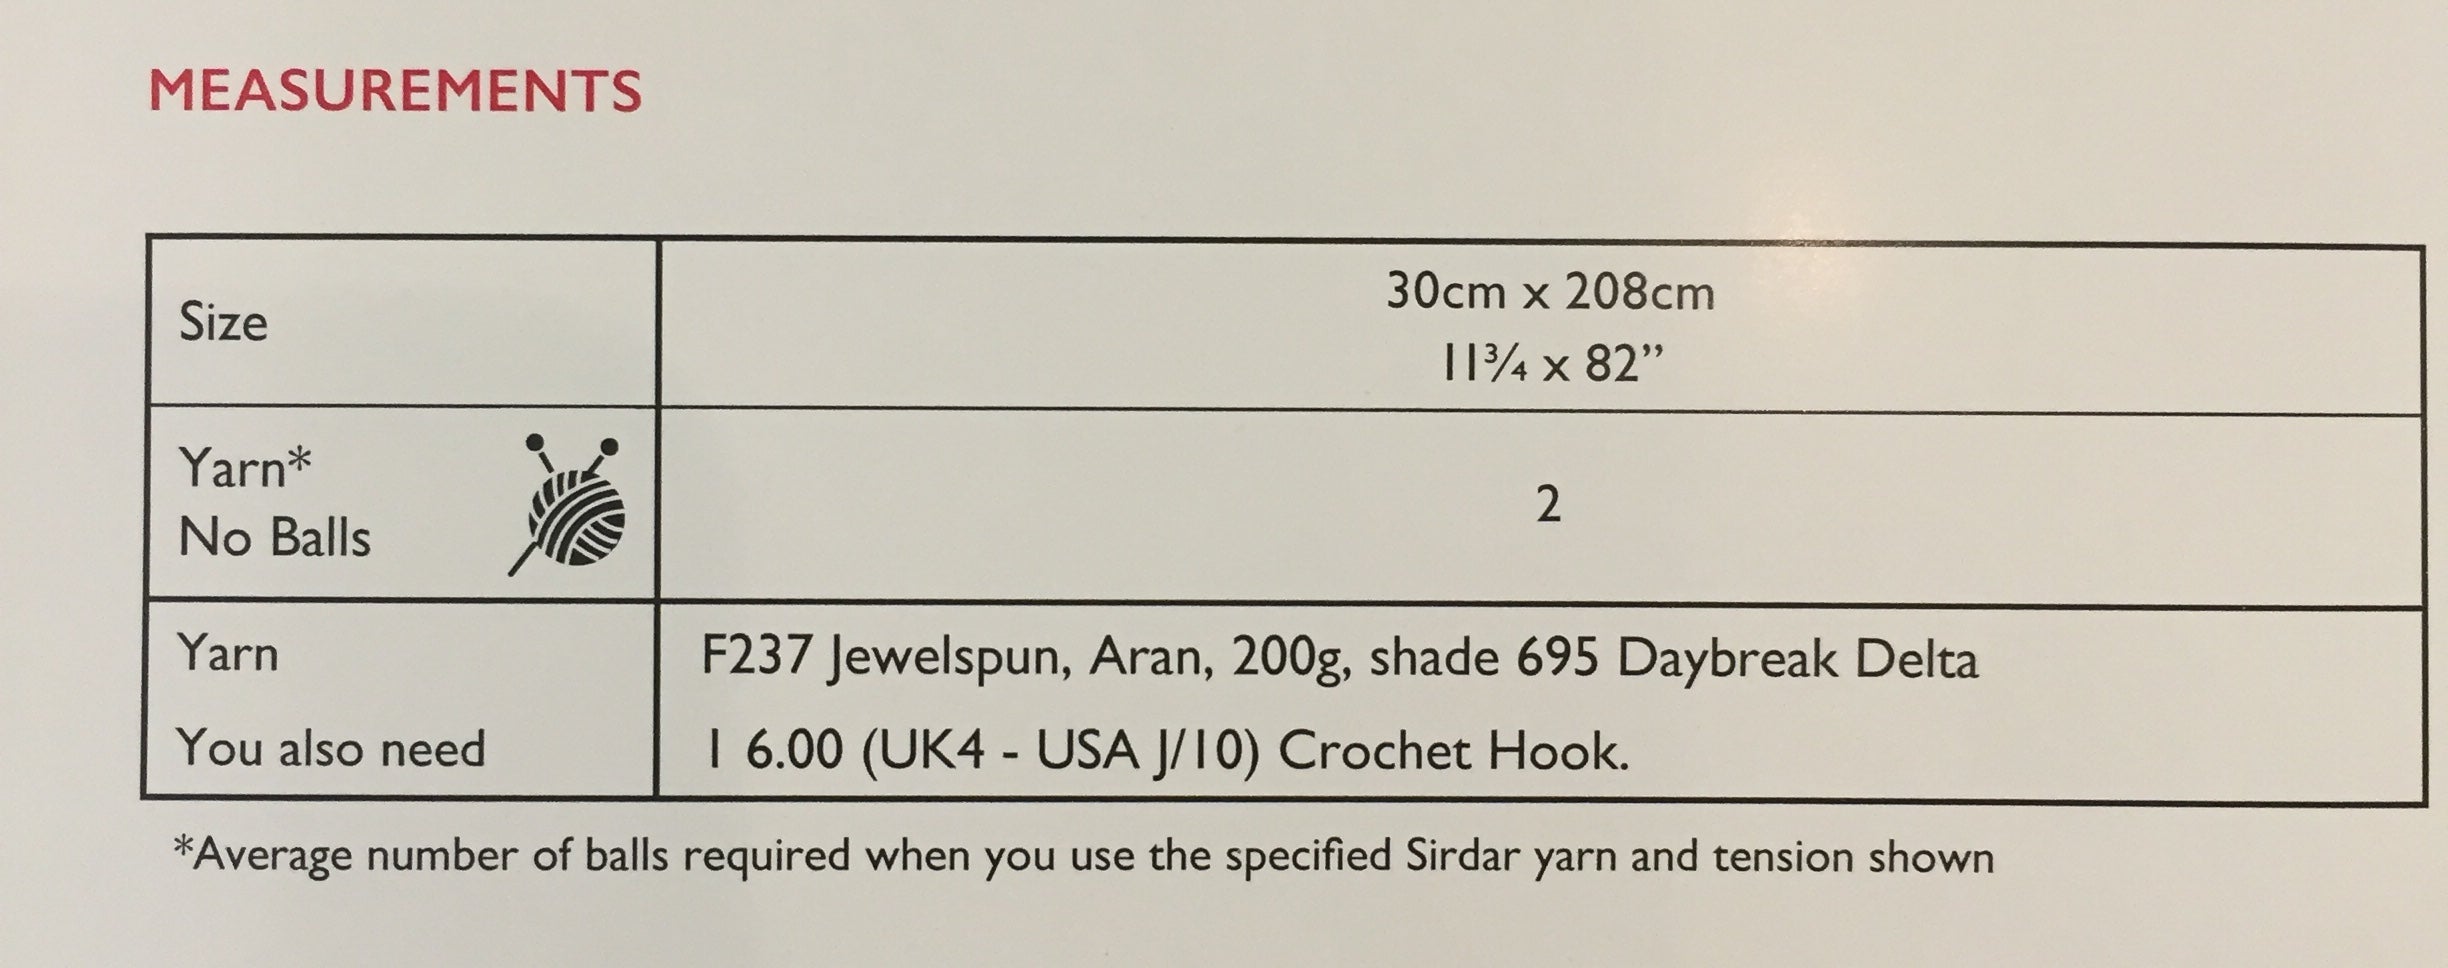 Sirdar Pattern 10289 Crochet Fringed Scarf in Jewelspun